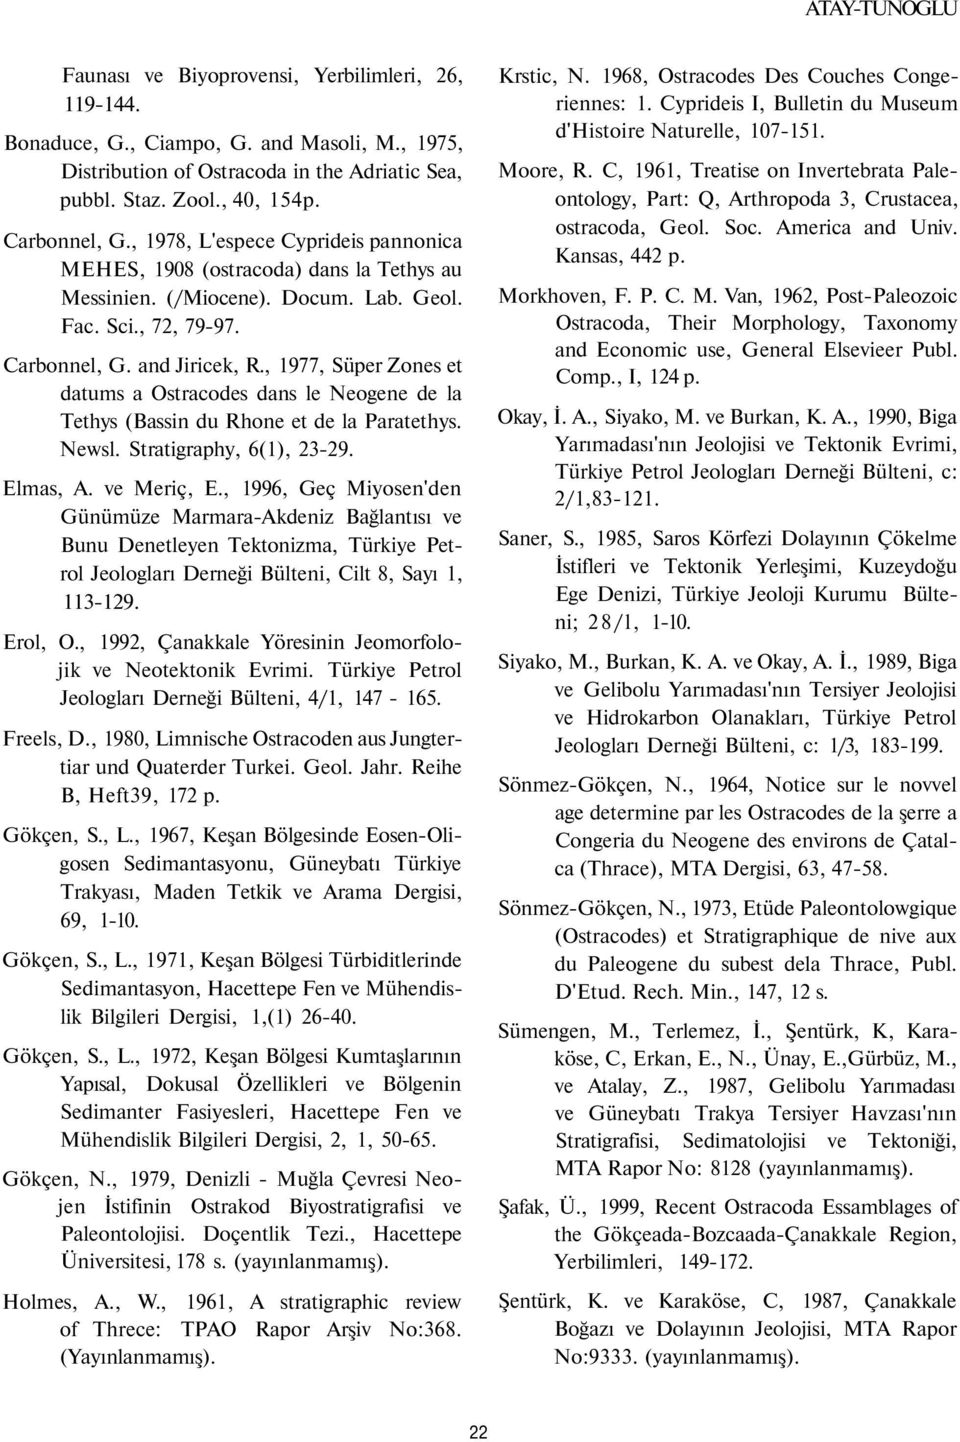 , 1977, Süper Zones et datums a Ostracodes dans le Neogene de la Tethys (Bassin du Rhone et de la Paratethys. Newsl. Stratigraphy, 6(1), 23-29. Elmas, A. ve Meriç, E.